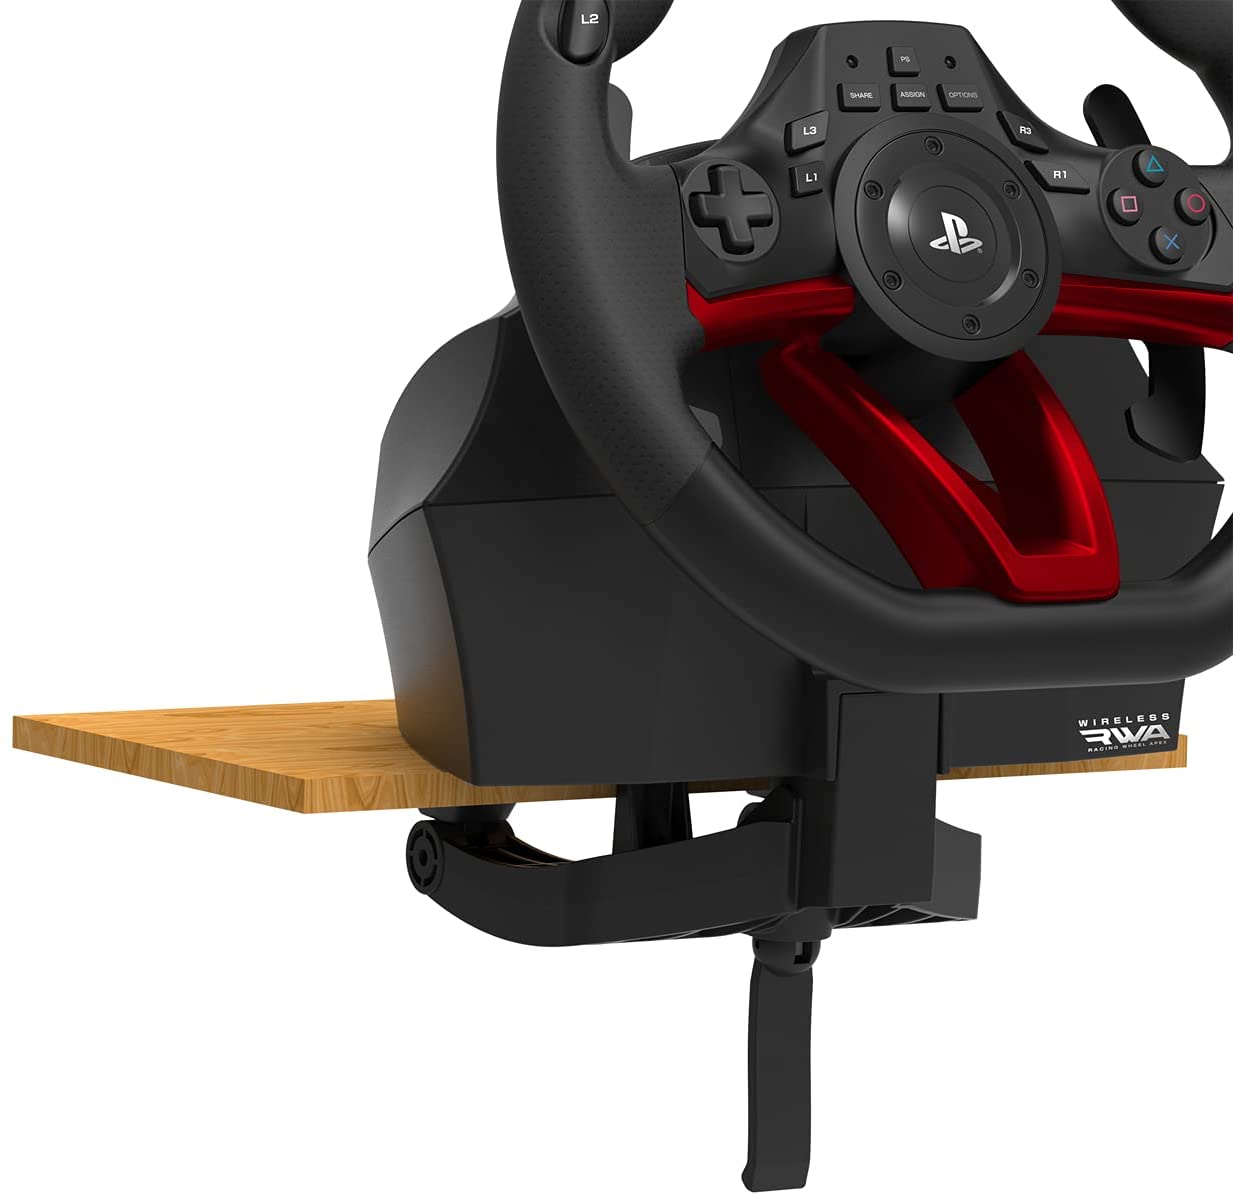 Volante PS4 racing wheel Apex para PS4, PS3 (Licencia Oficial Sony